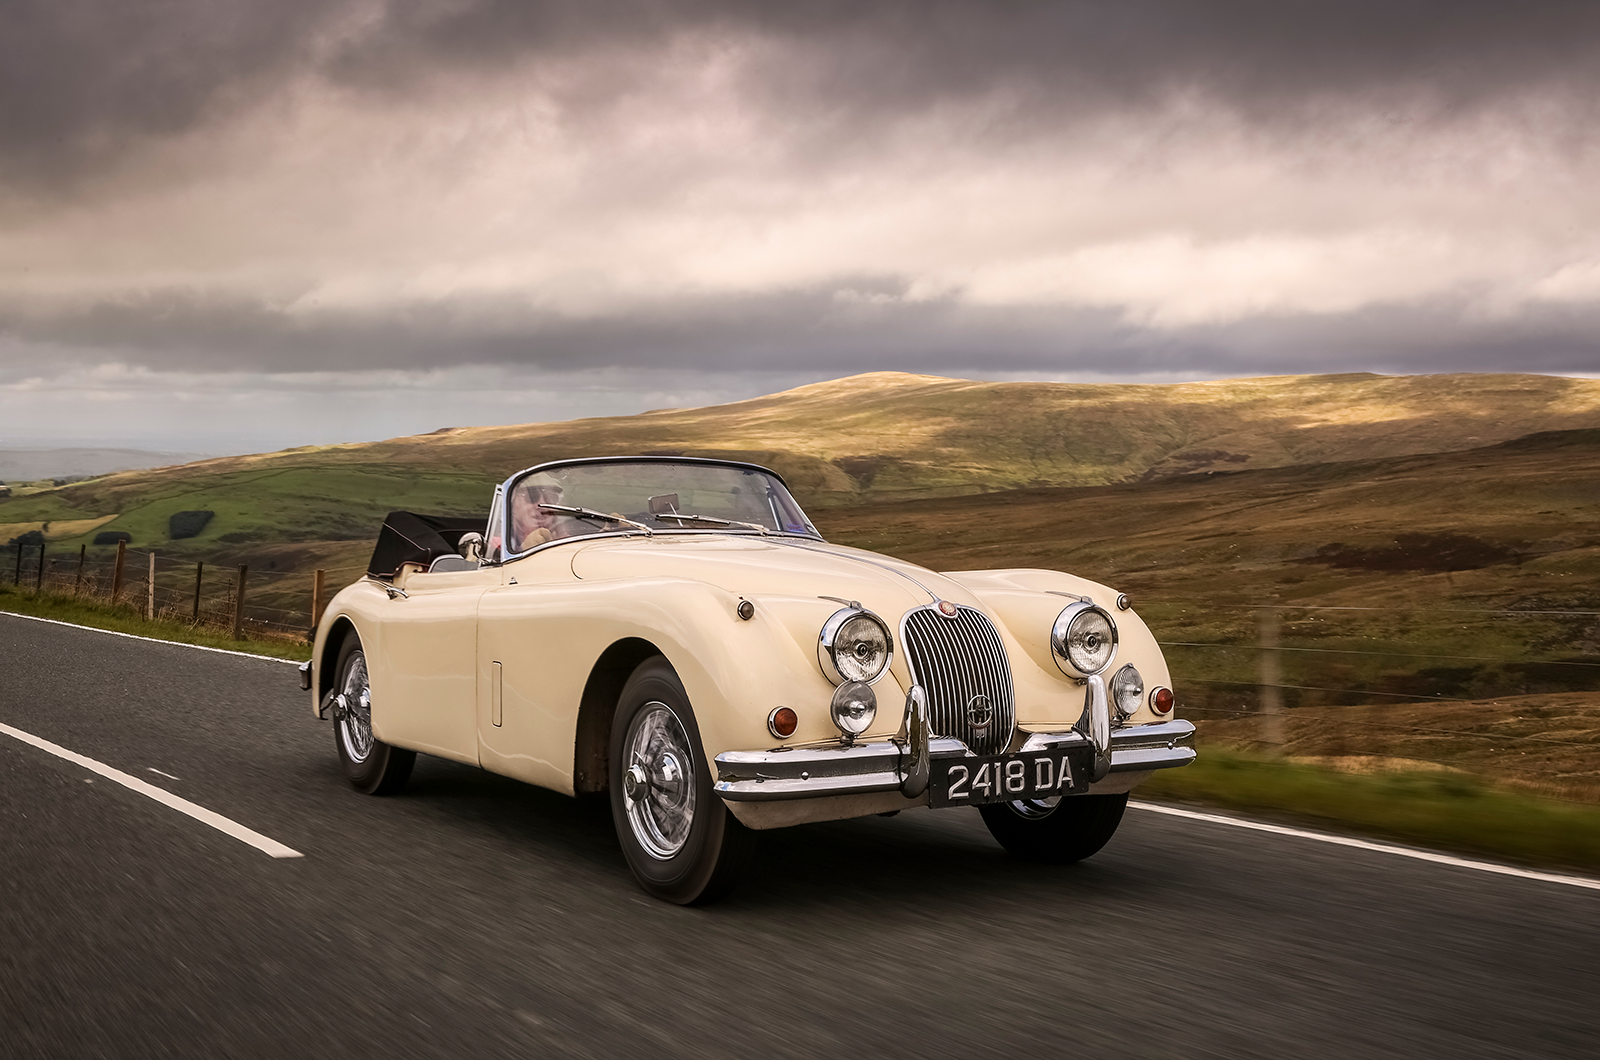 Classic & Sports Car – The £300 Jaguar XK150 that’s become a lifelong friend